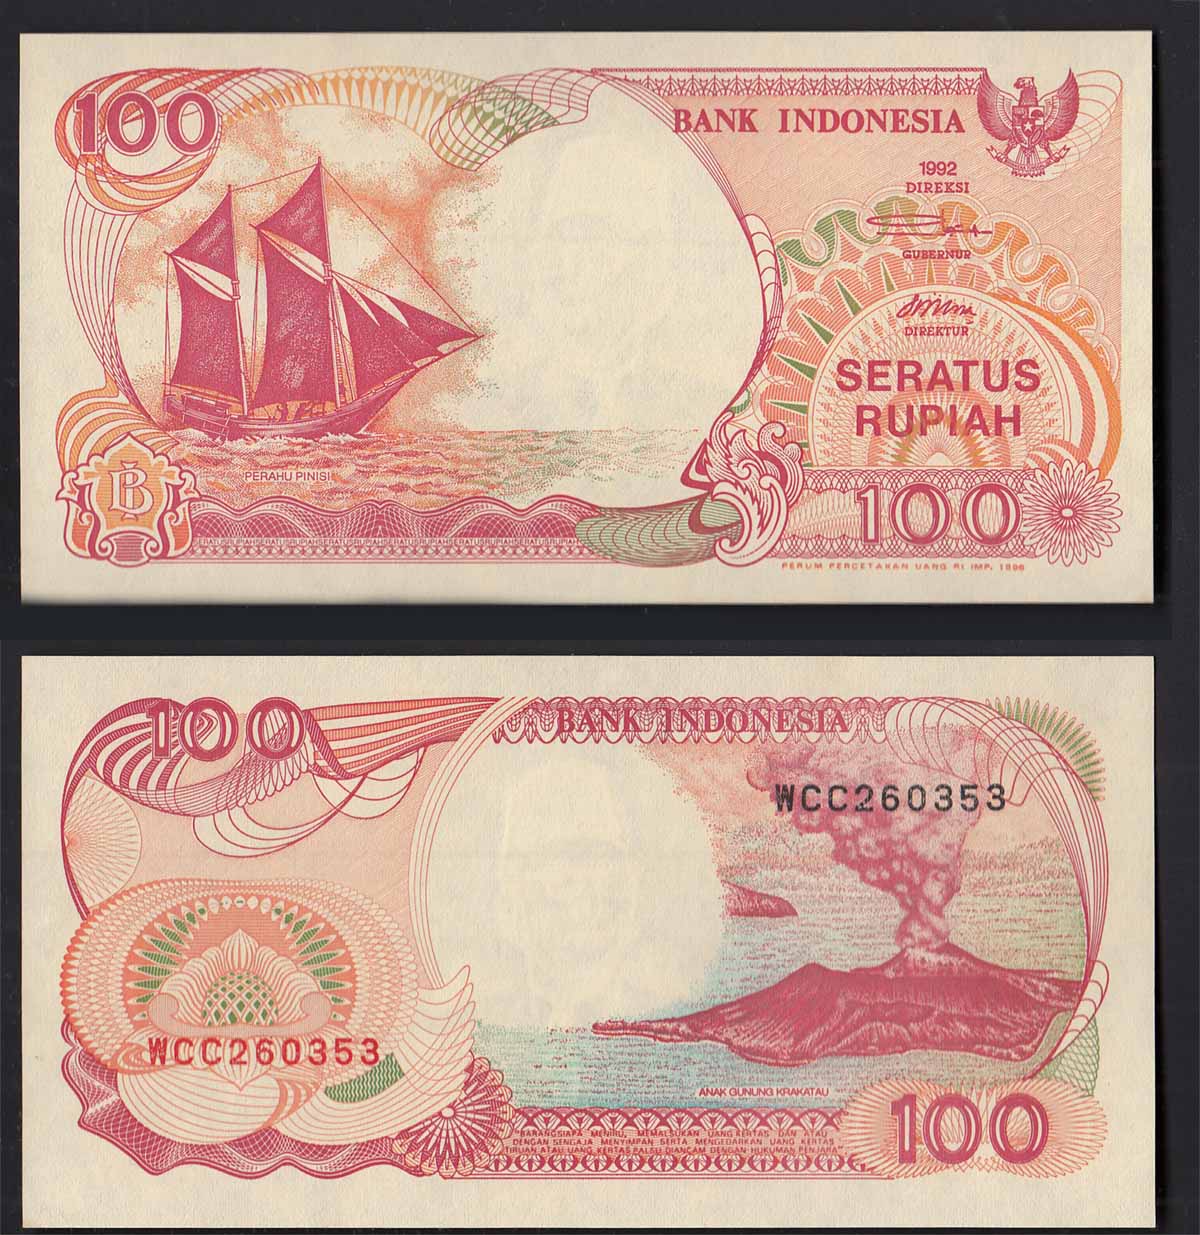 INDONESIA 100 Rupiah 1992/1999 Fior di Stampa